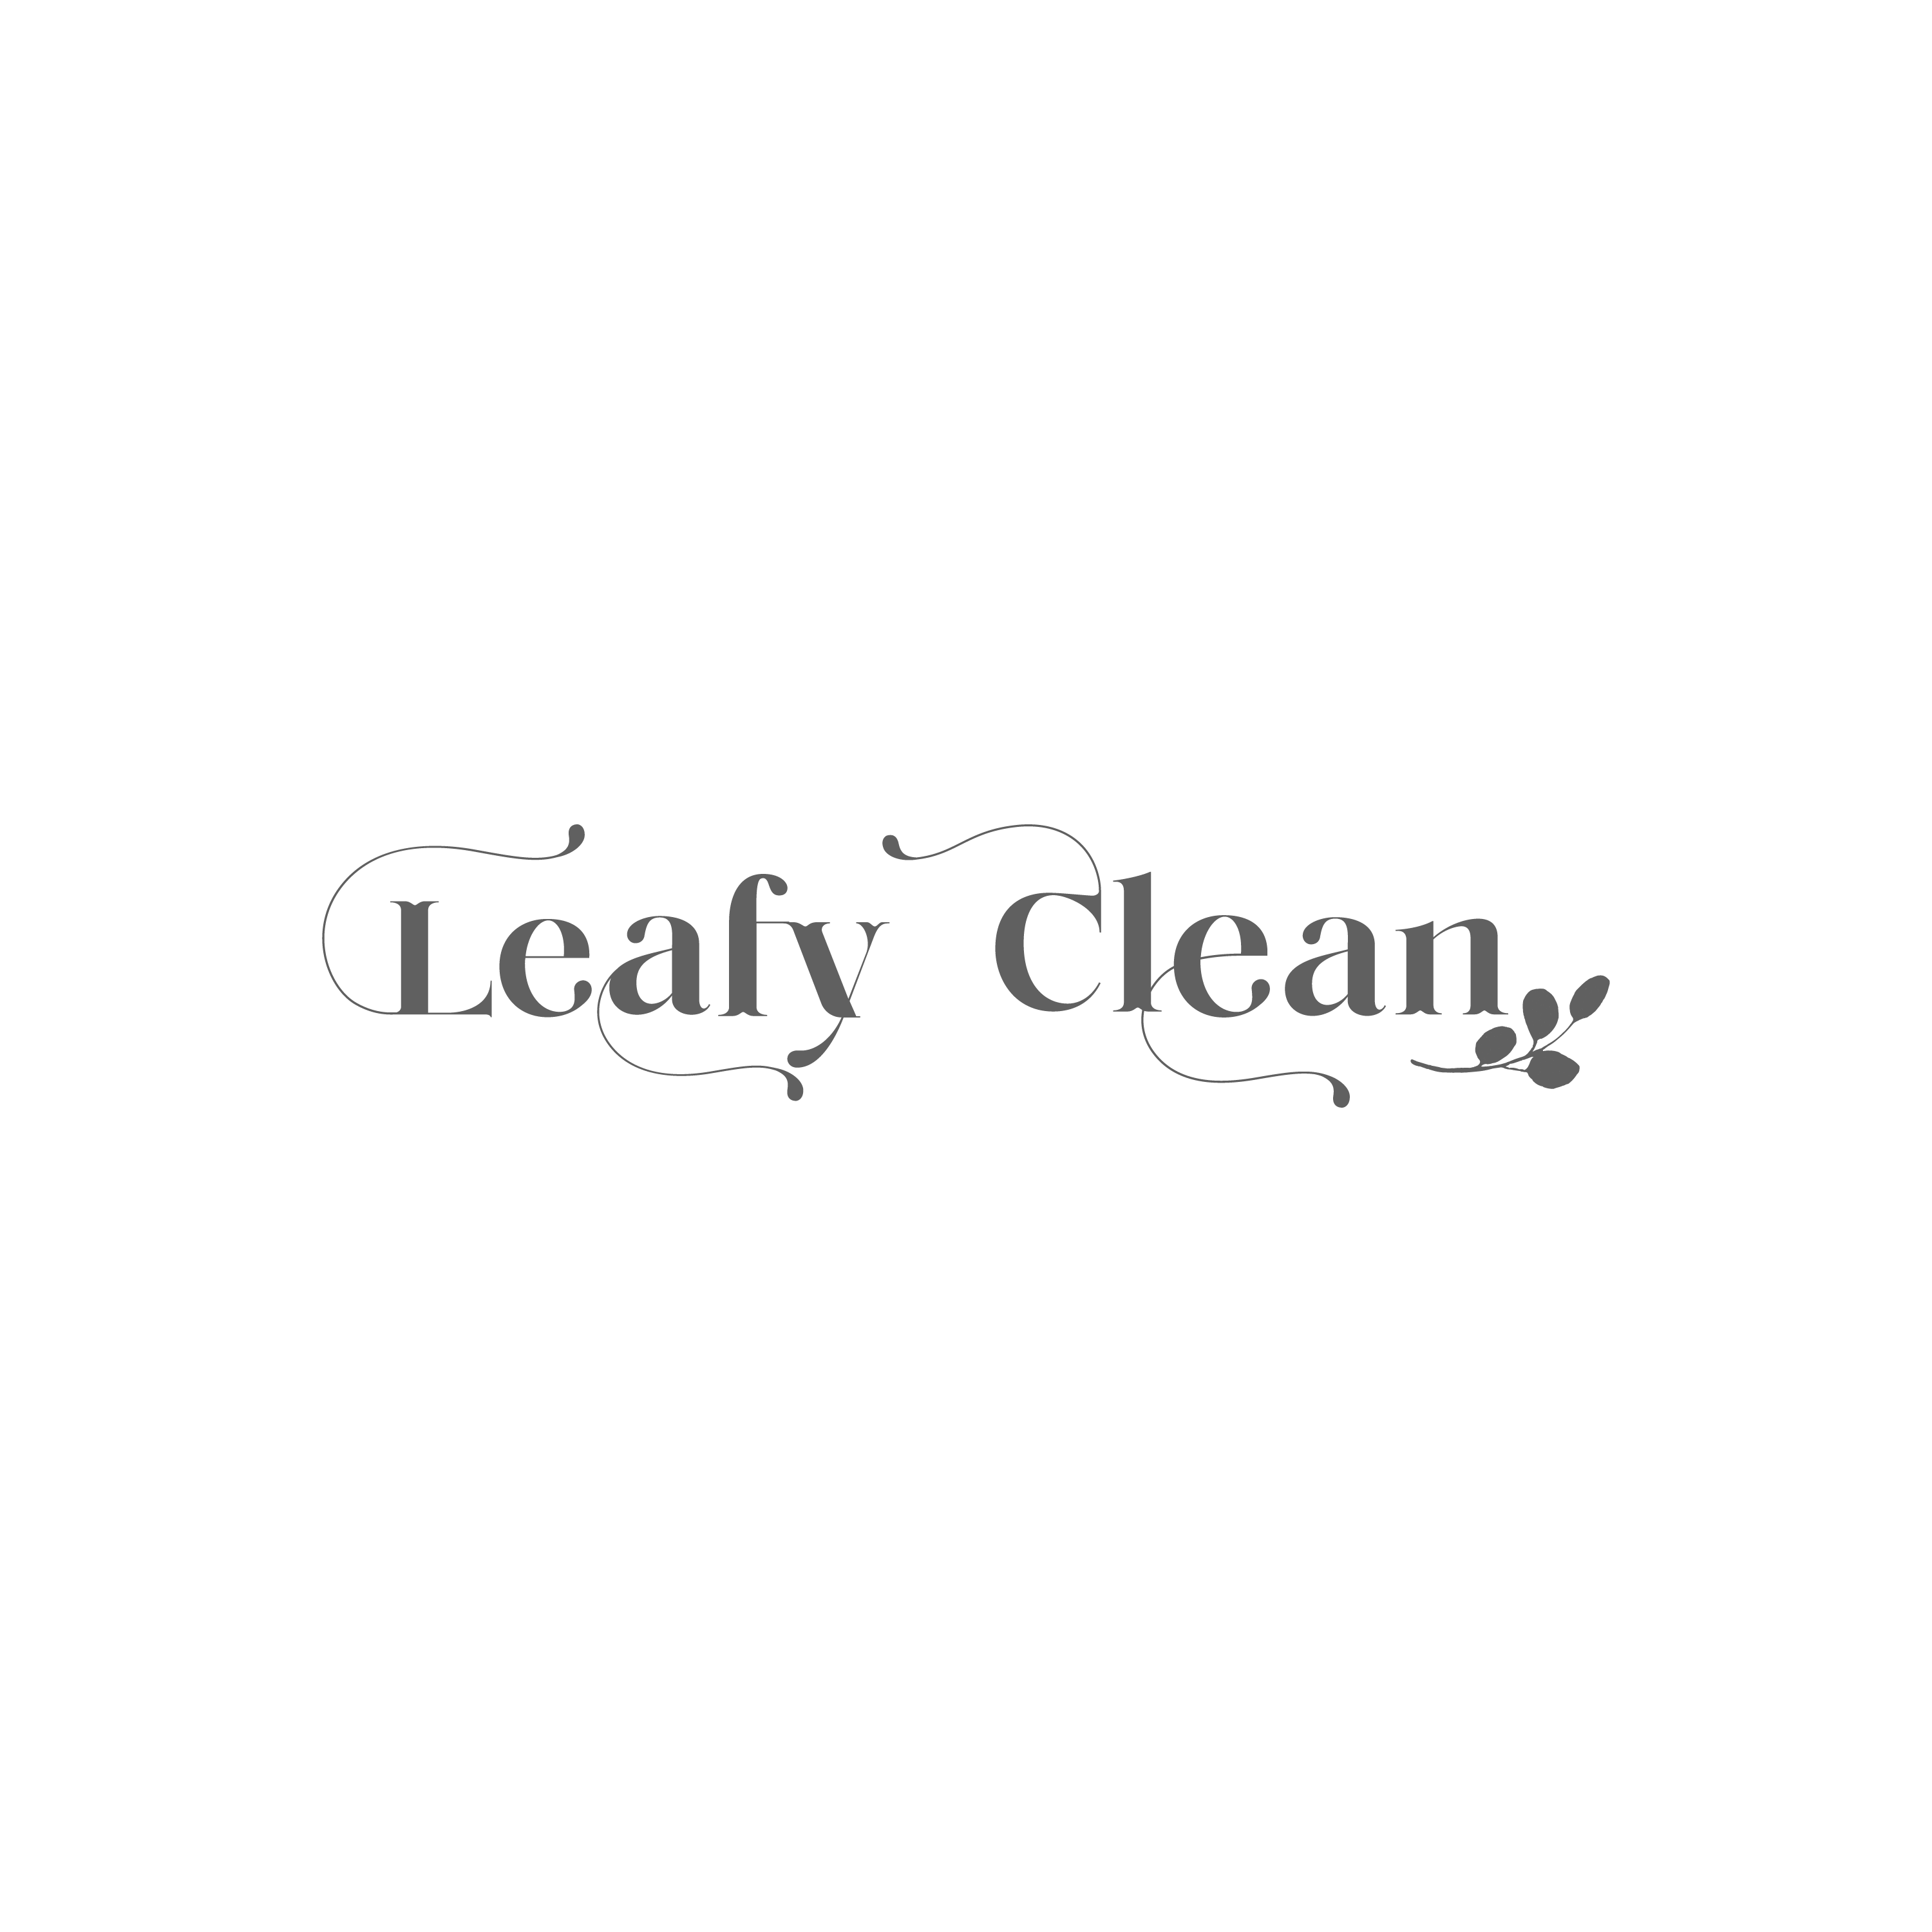 Leafy Clean Logo